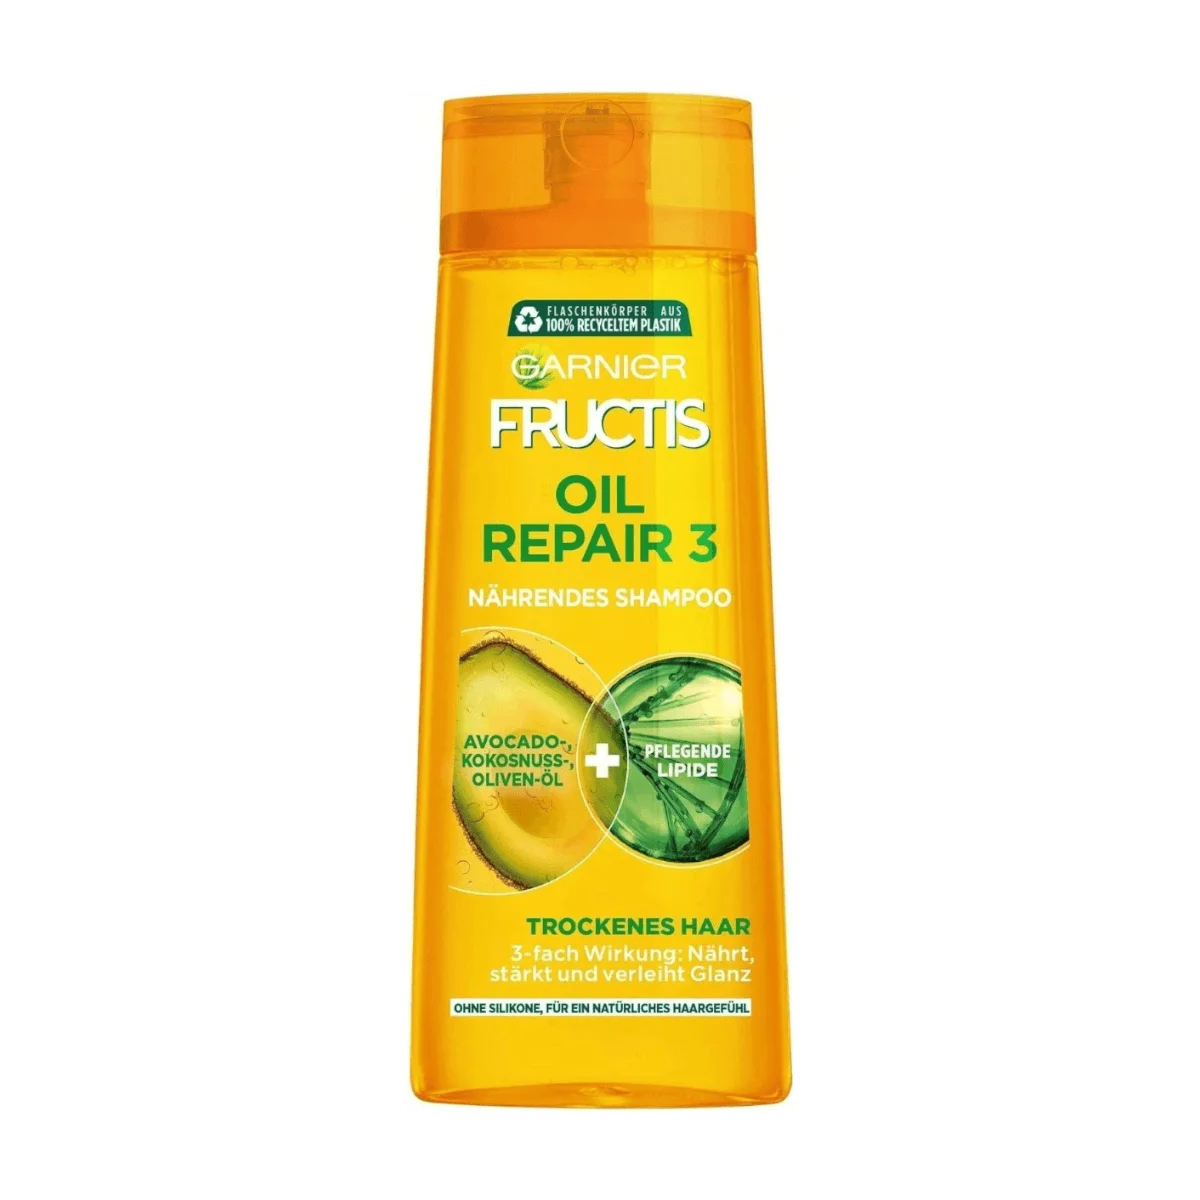 Nährendes Shampoo Repair Fructis Garnier 3 Oil